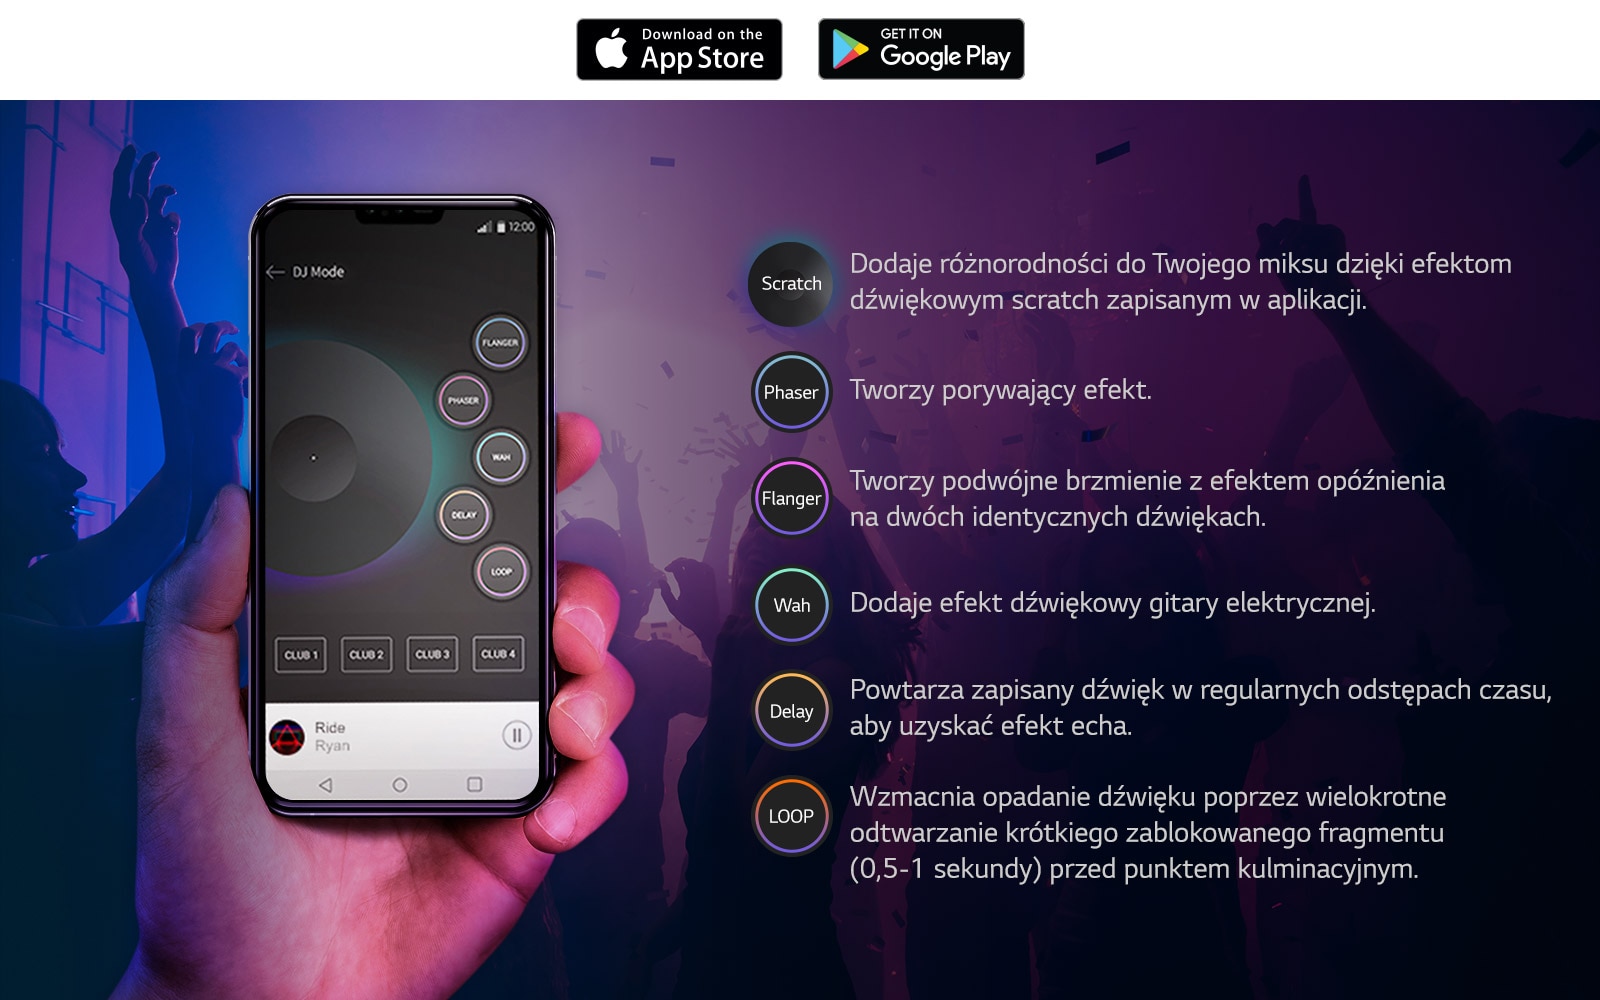 Aby wyrazić, że dźwięk wychodzi z produktu, jakby ten był DJ-em korzystającym z aplikacji XBOOM, pokazano zdjęcie ręki trzymającej telefon z widocznym ekranem aplikacji DJ i ukazanymi funkcjami obok.